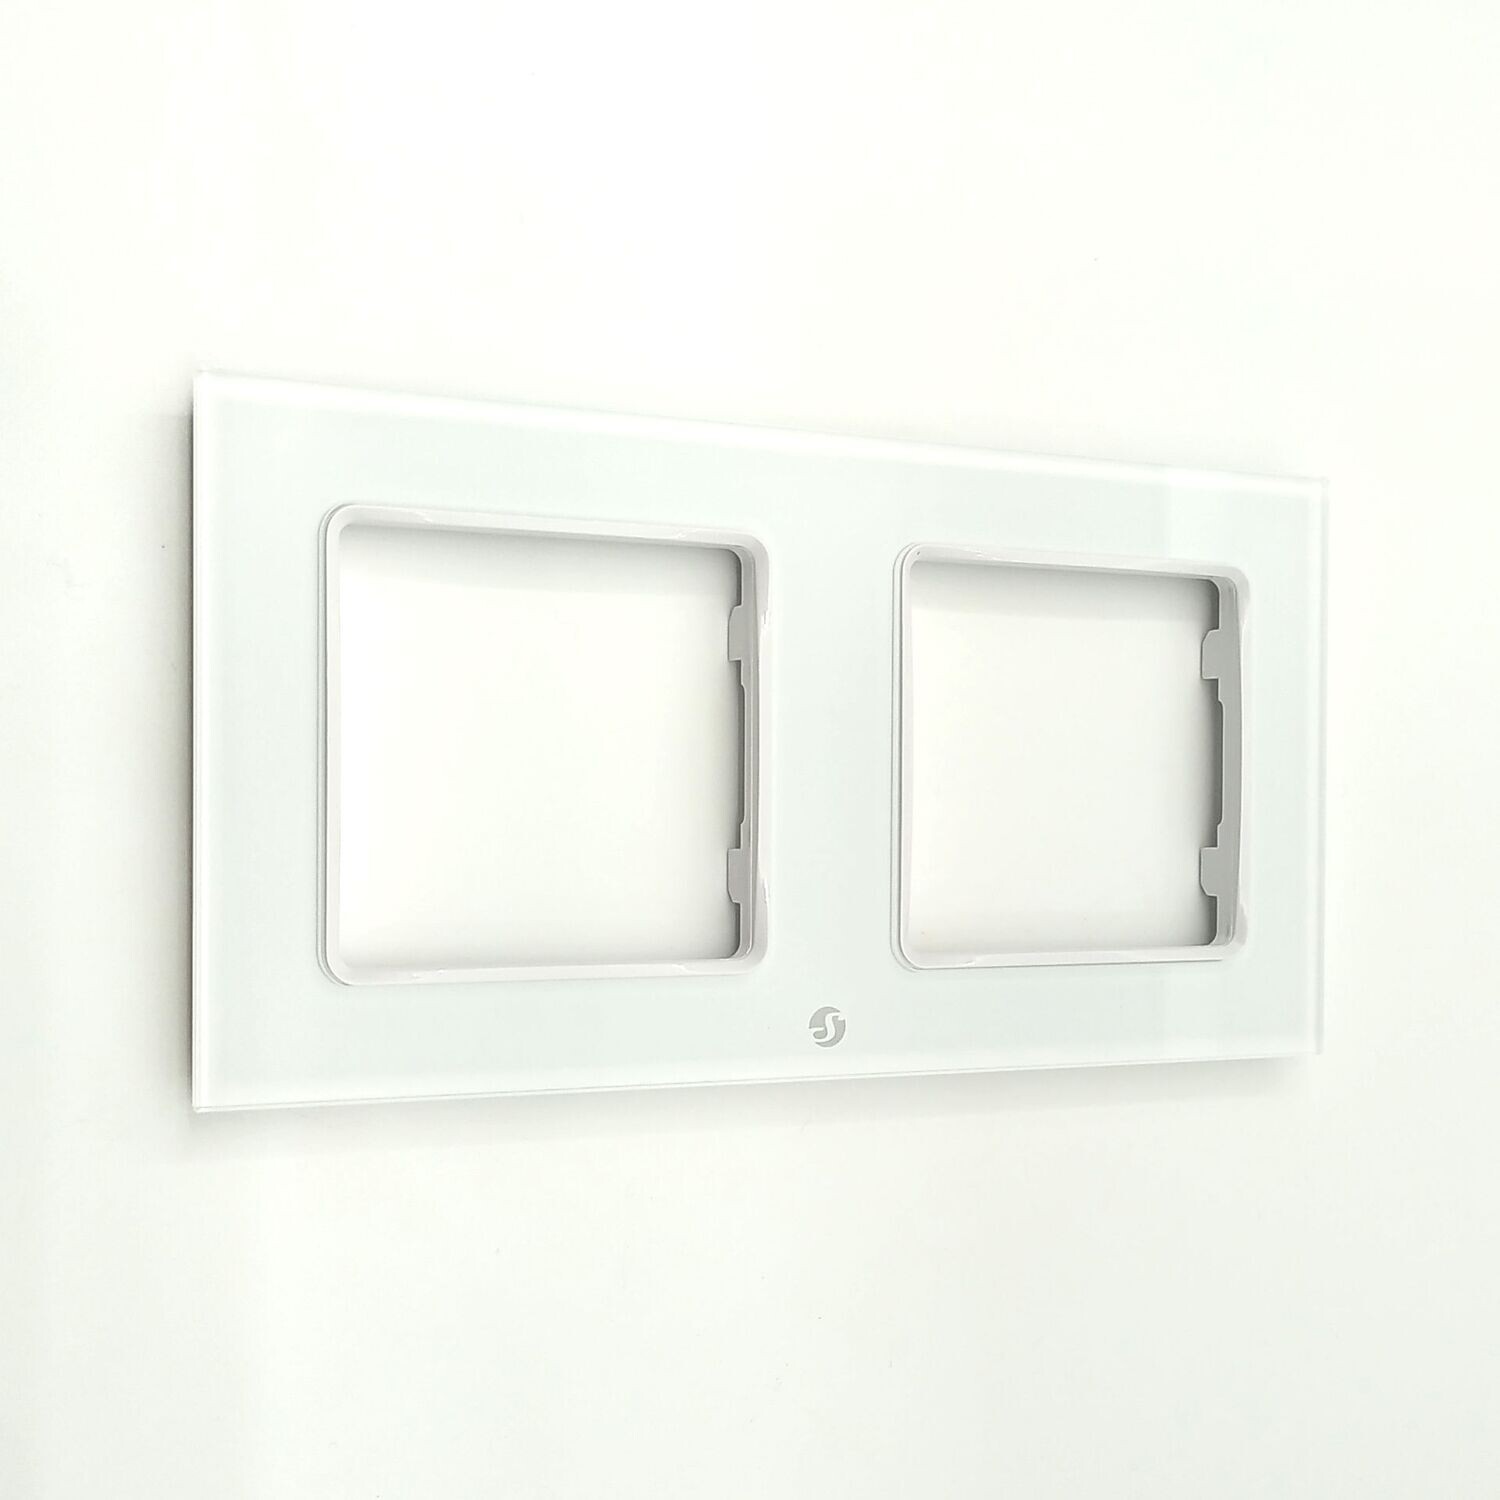 Shelly Wall Frame 2 - kahden Wall Switch -tuotteen valkoinen seinäkehys